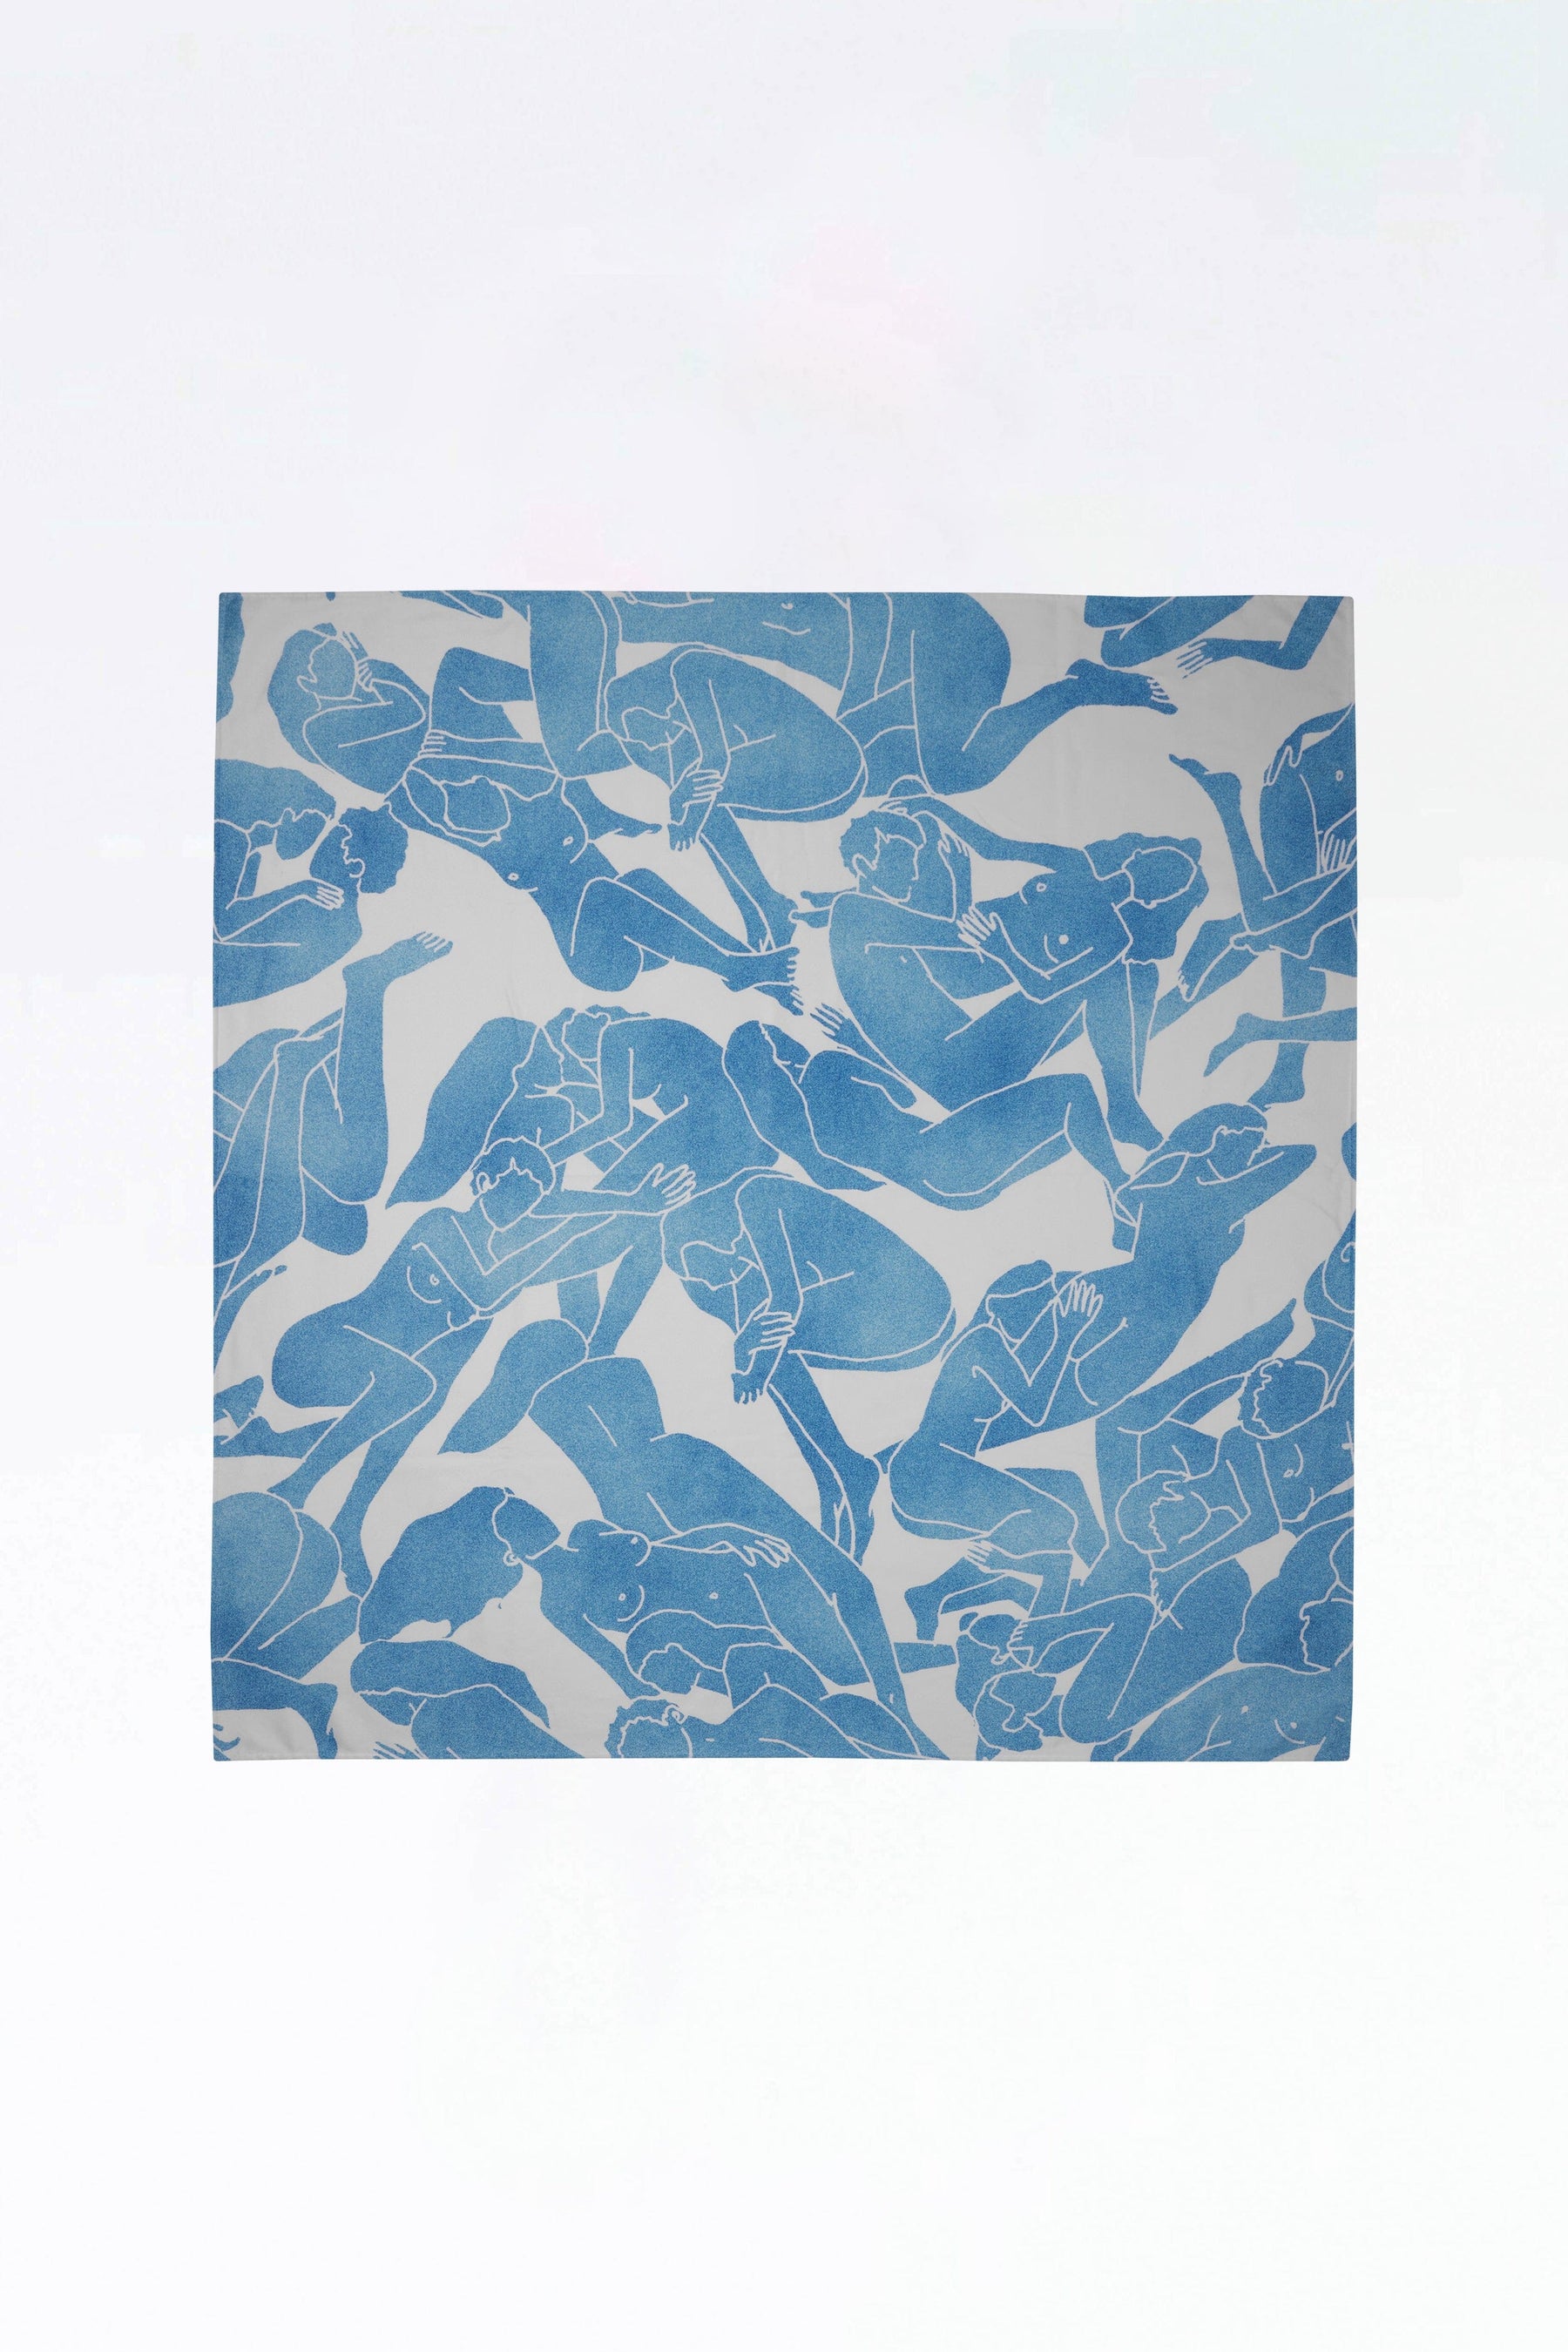 BEACH TOWEL 145x145cm printed Géants Bleus BEACH TOWEL Fête Impériale